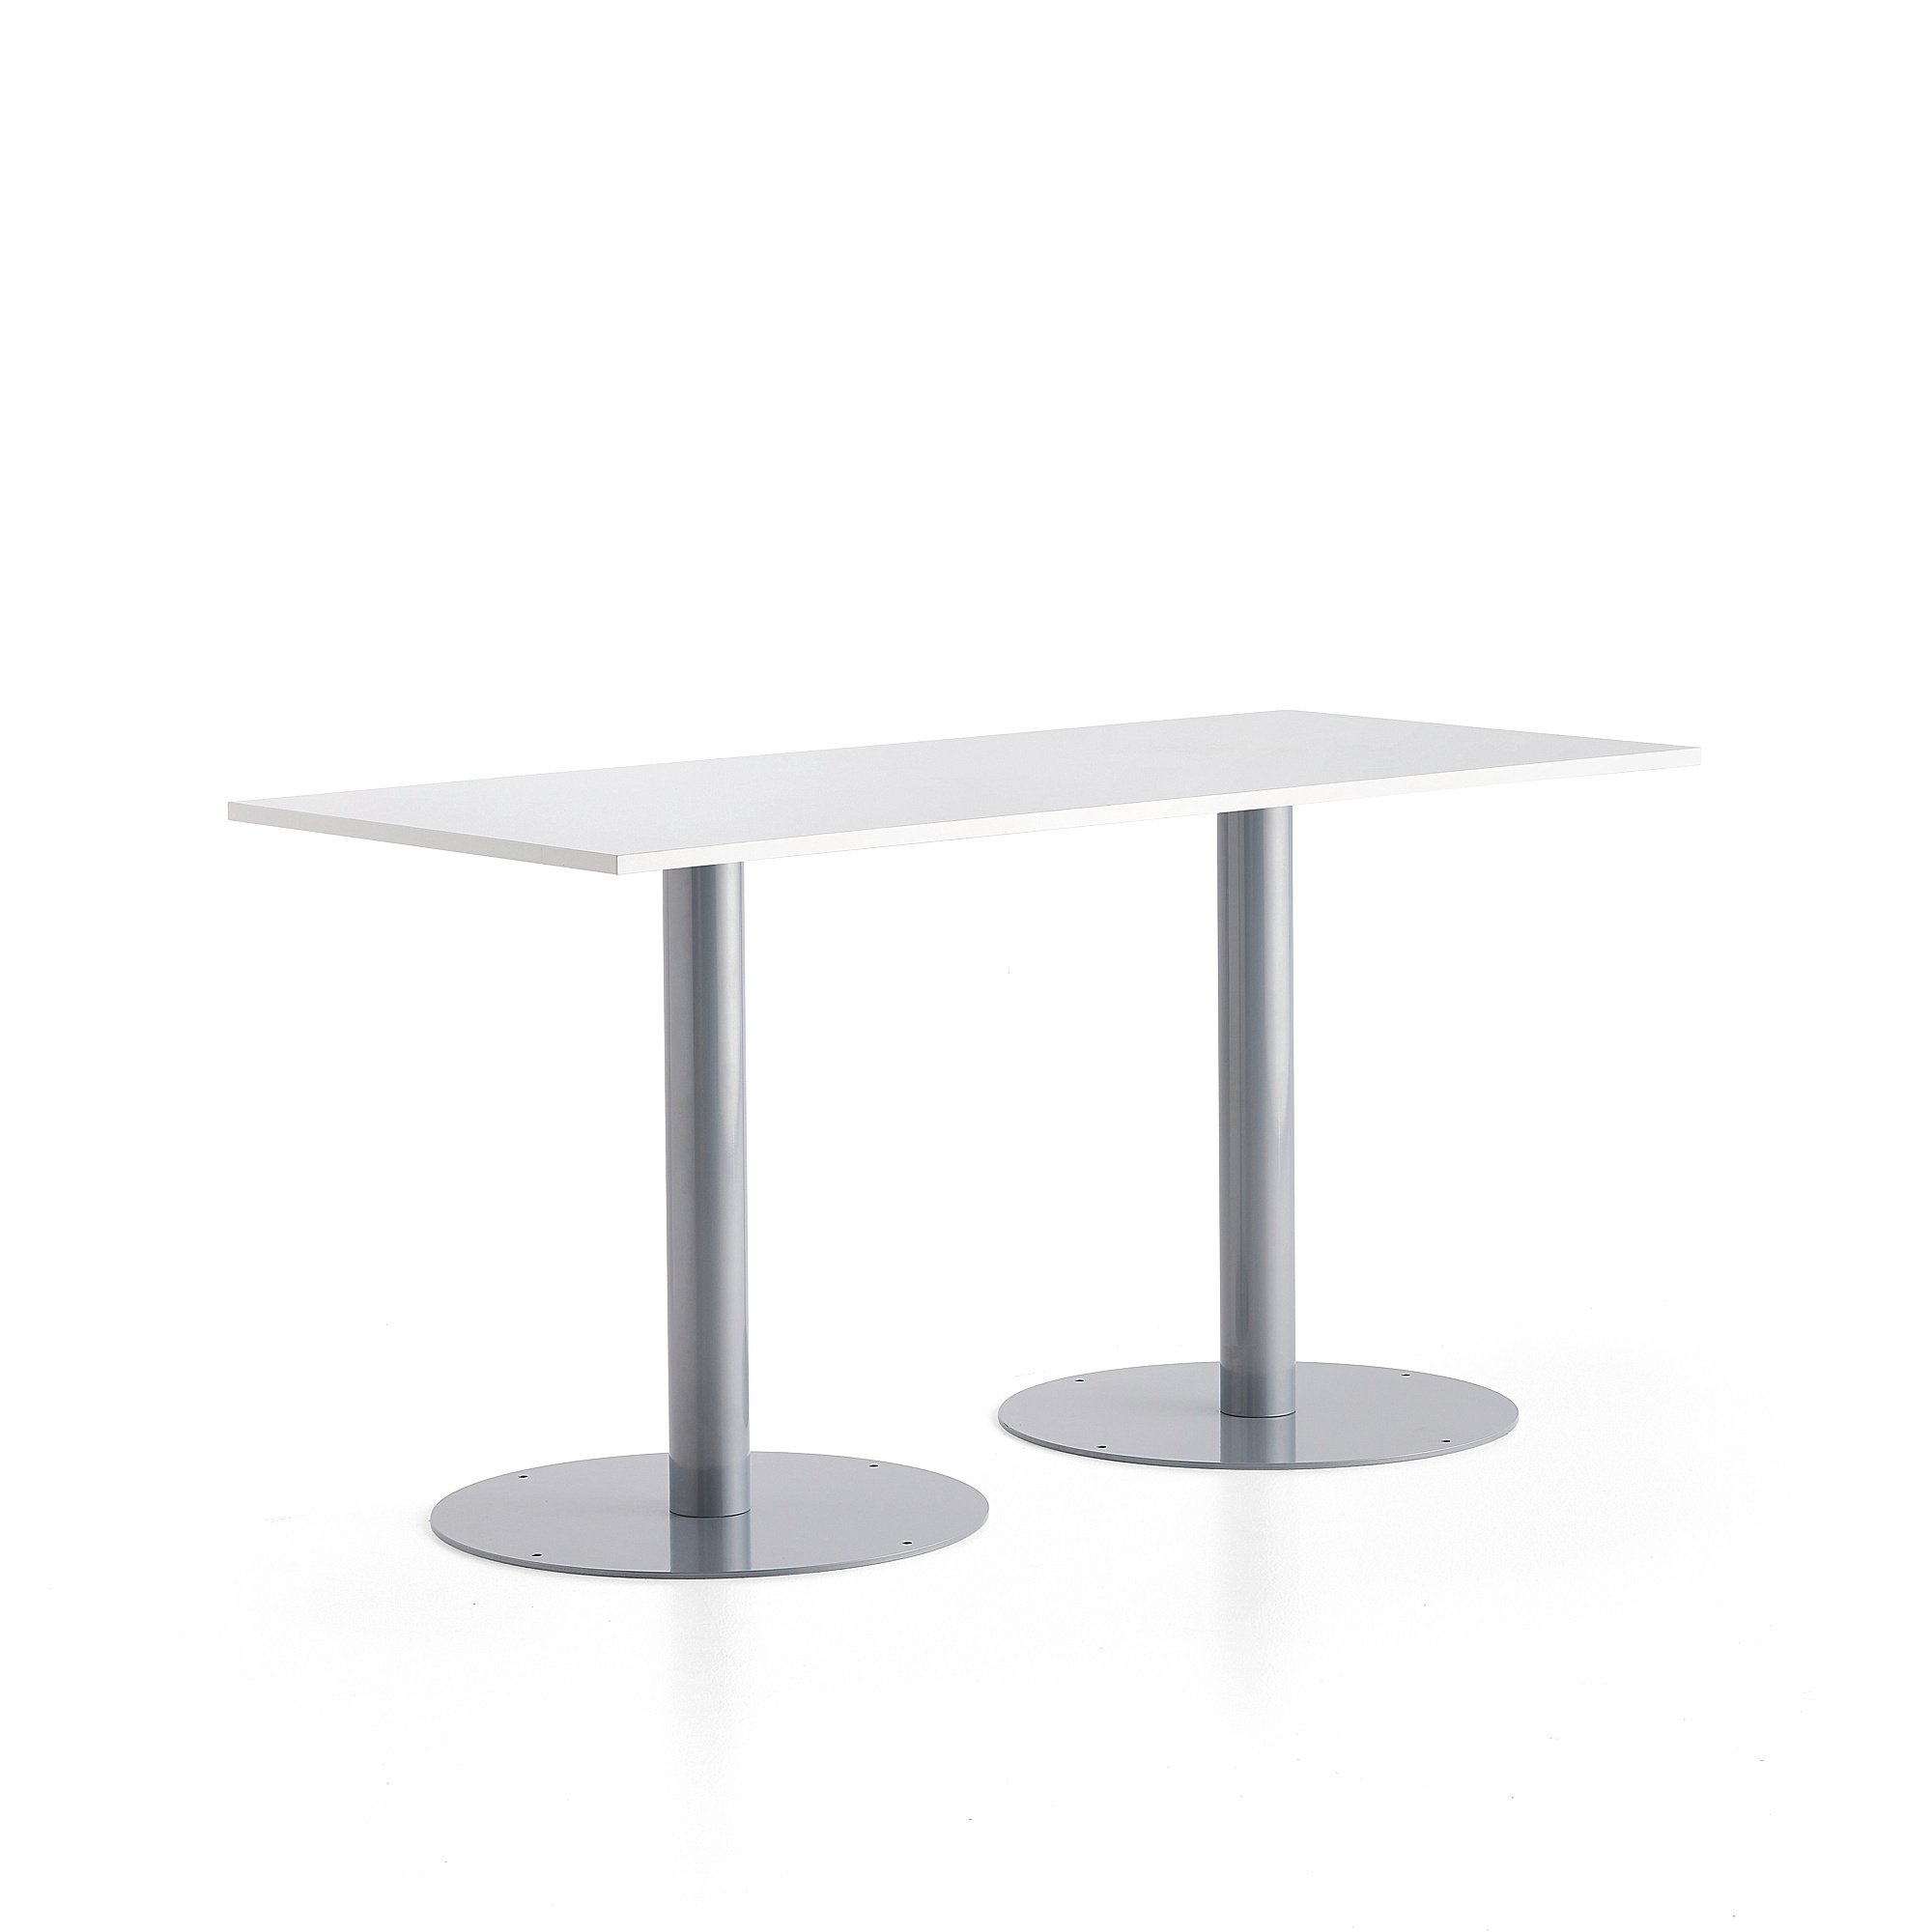 Stůl ALVA, 1800x800x900 mm, stříbrná, bílá